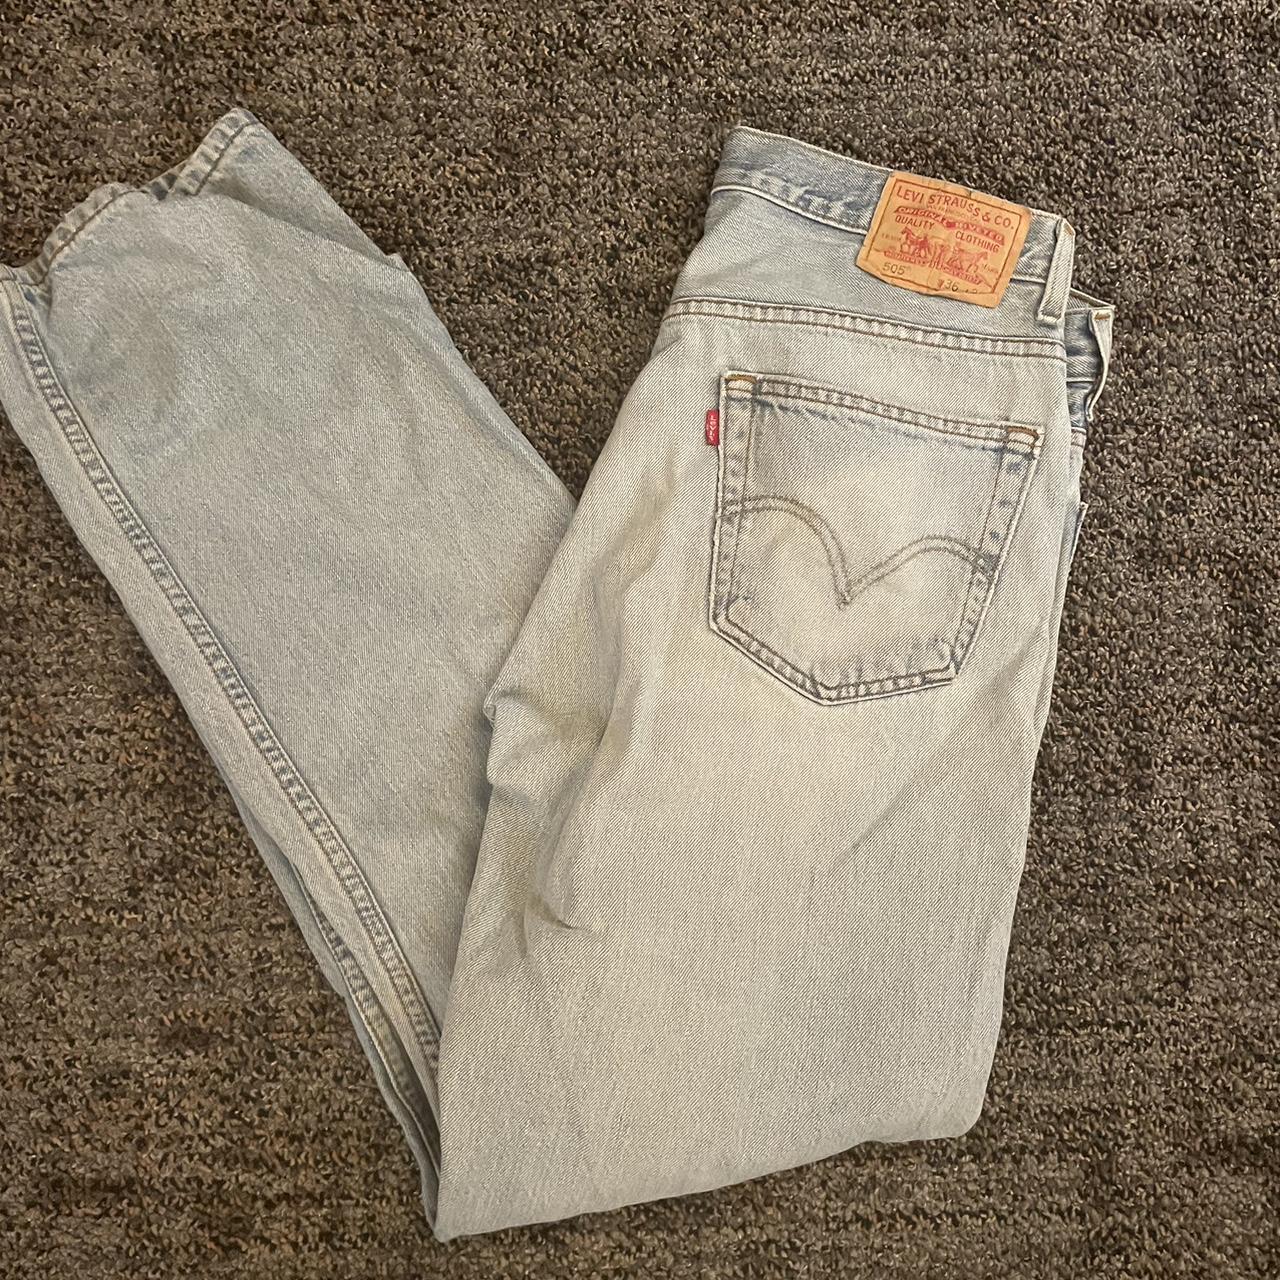 vintage levi’s 505 jeans size 36x32 great condition - Depop